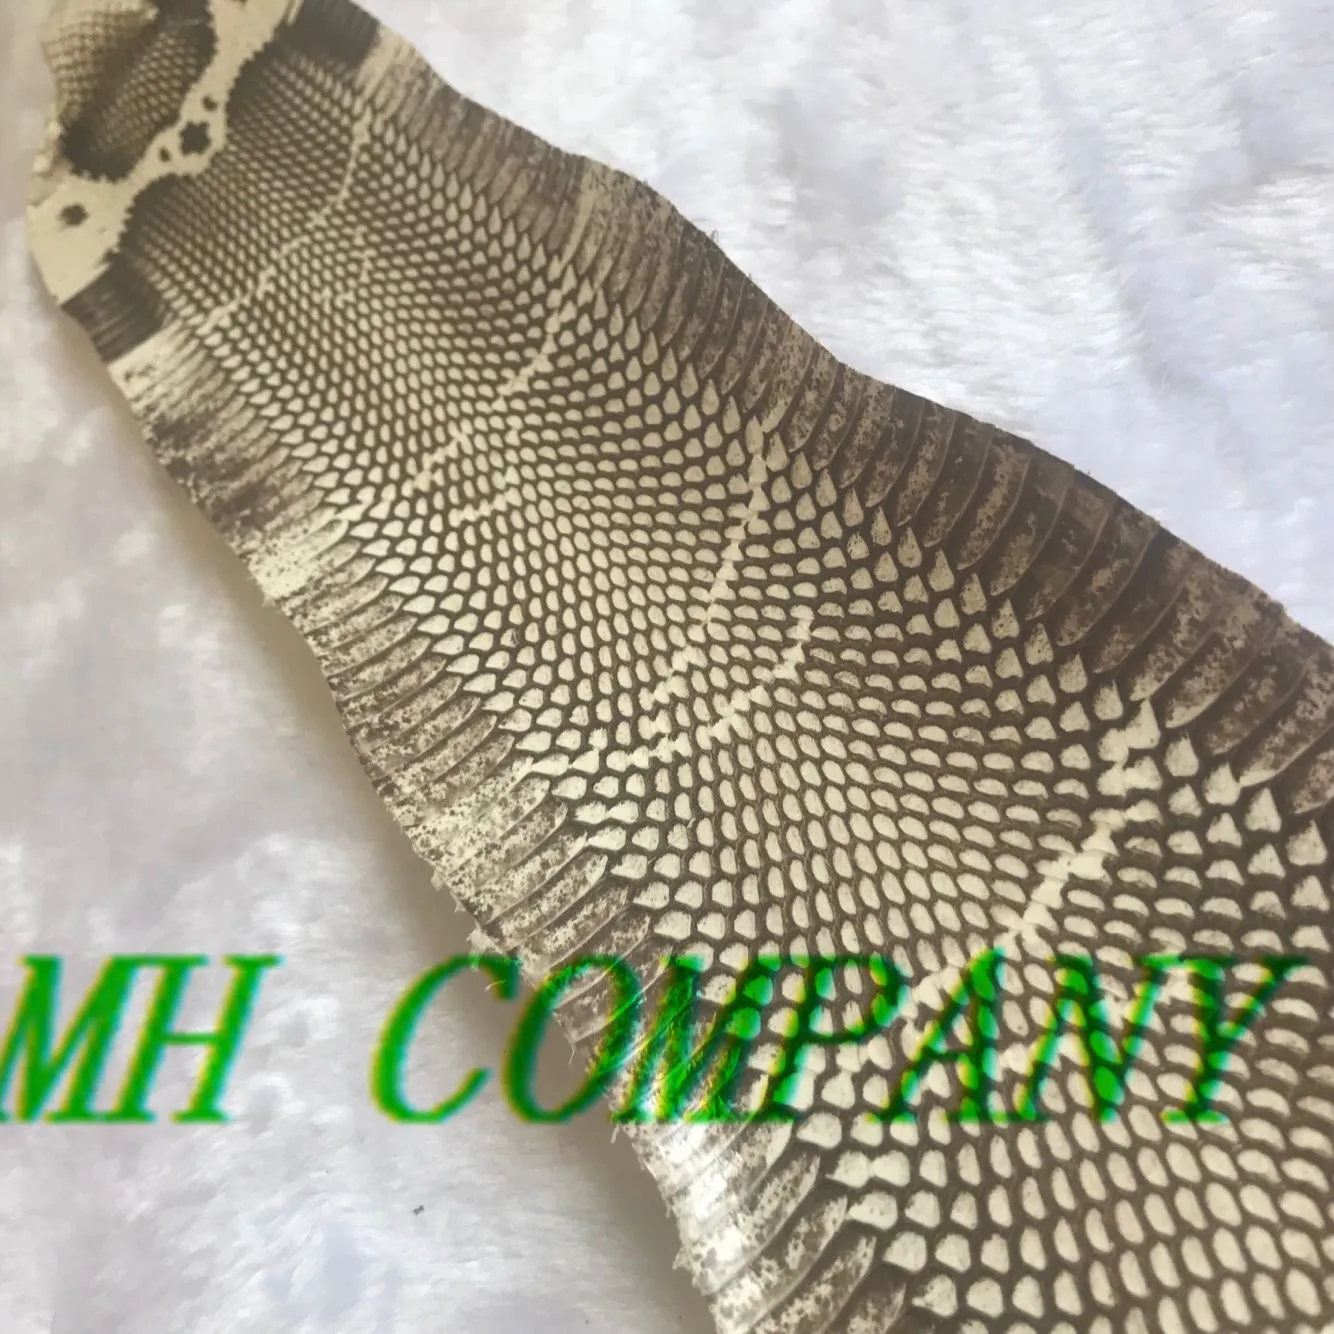 CS001 Natrual цвет Кобра змеиная кожа для изготовления поясной сумки обуви